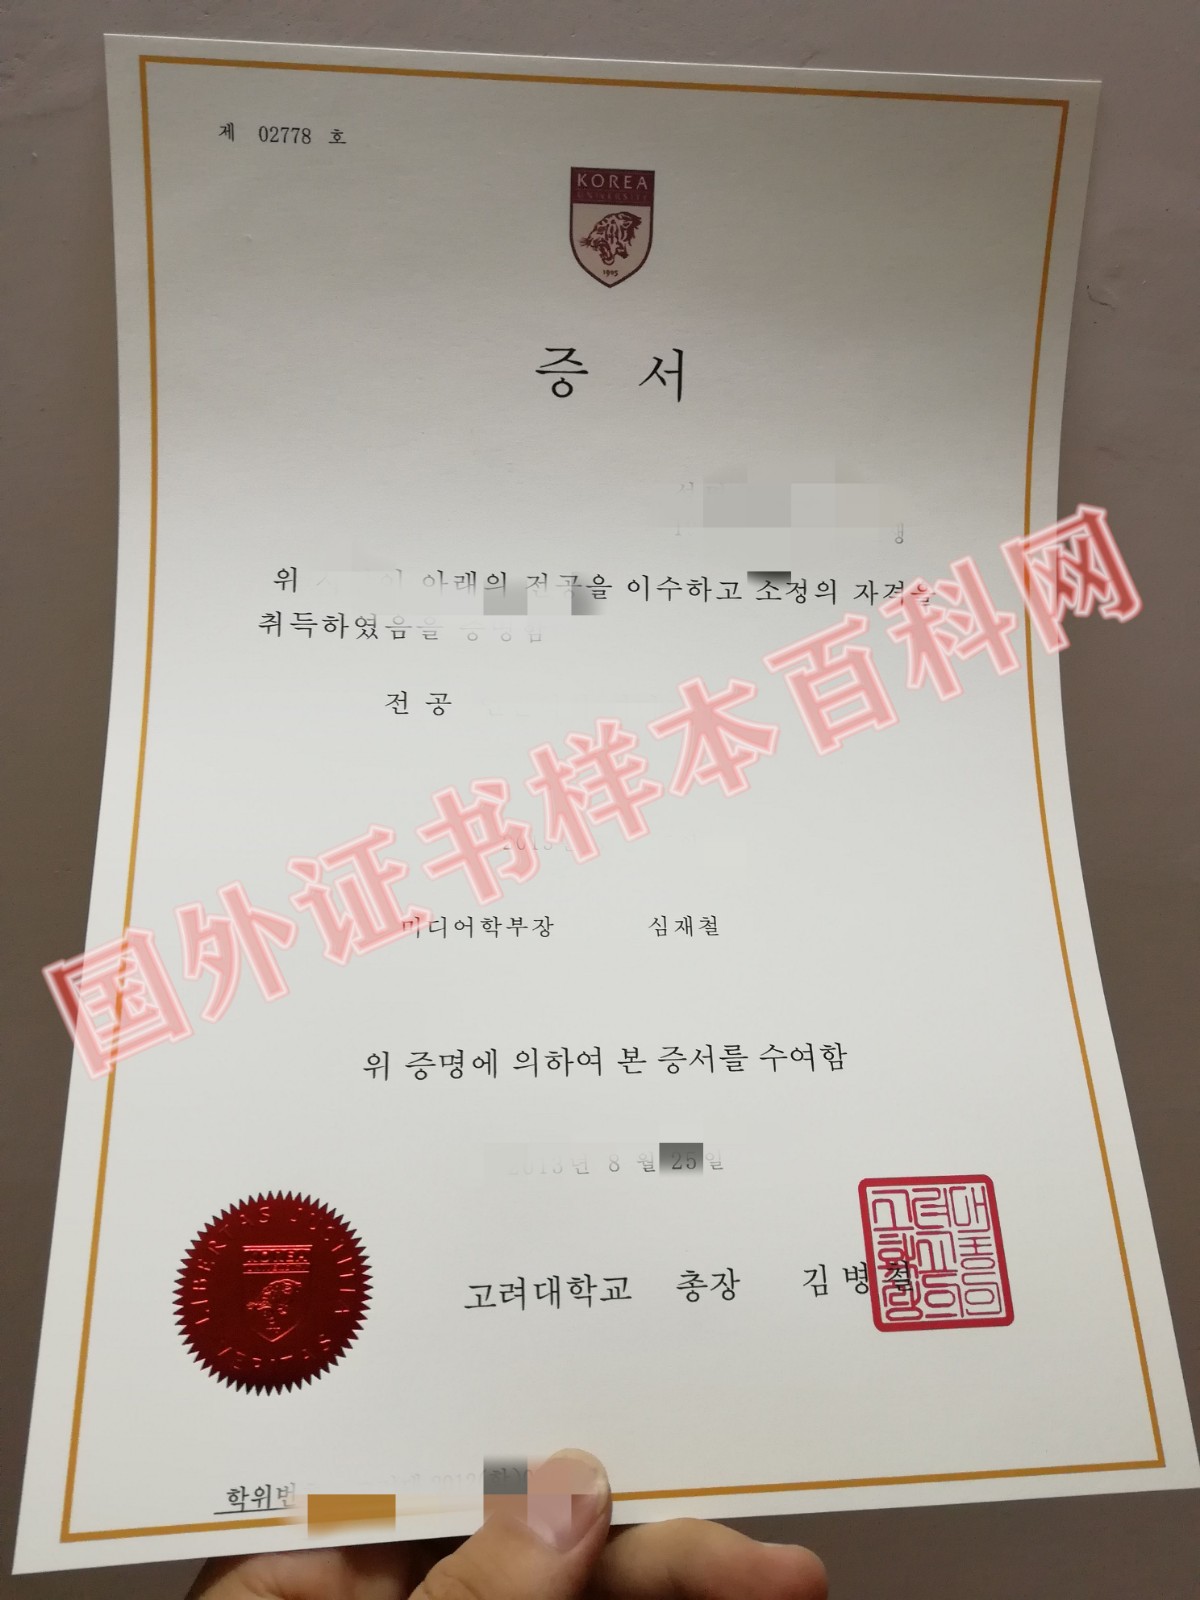 版本定制:韩国高丽大学毕业证书样本